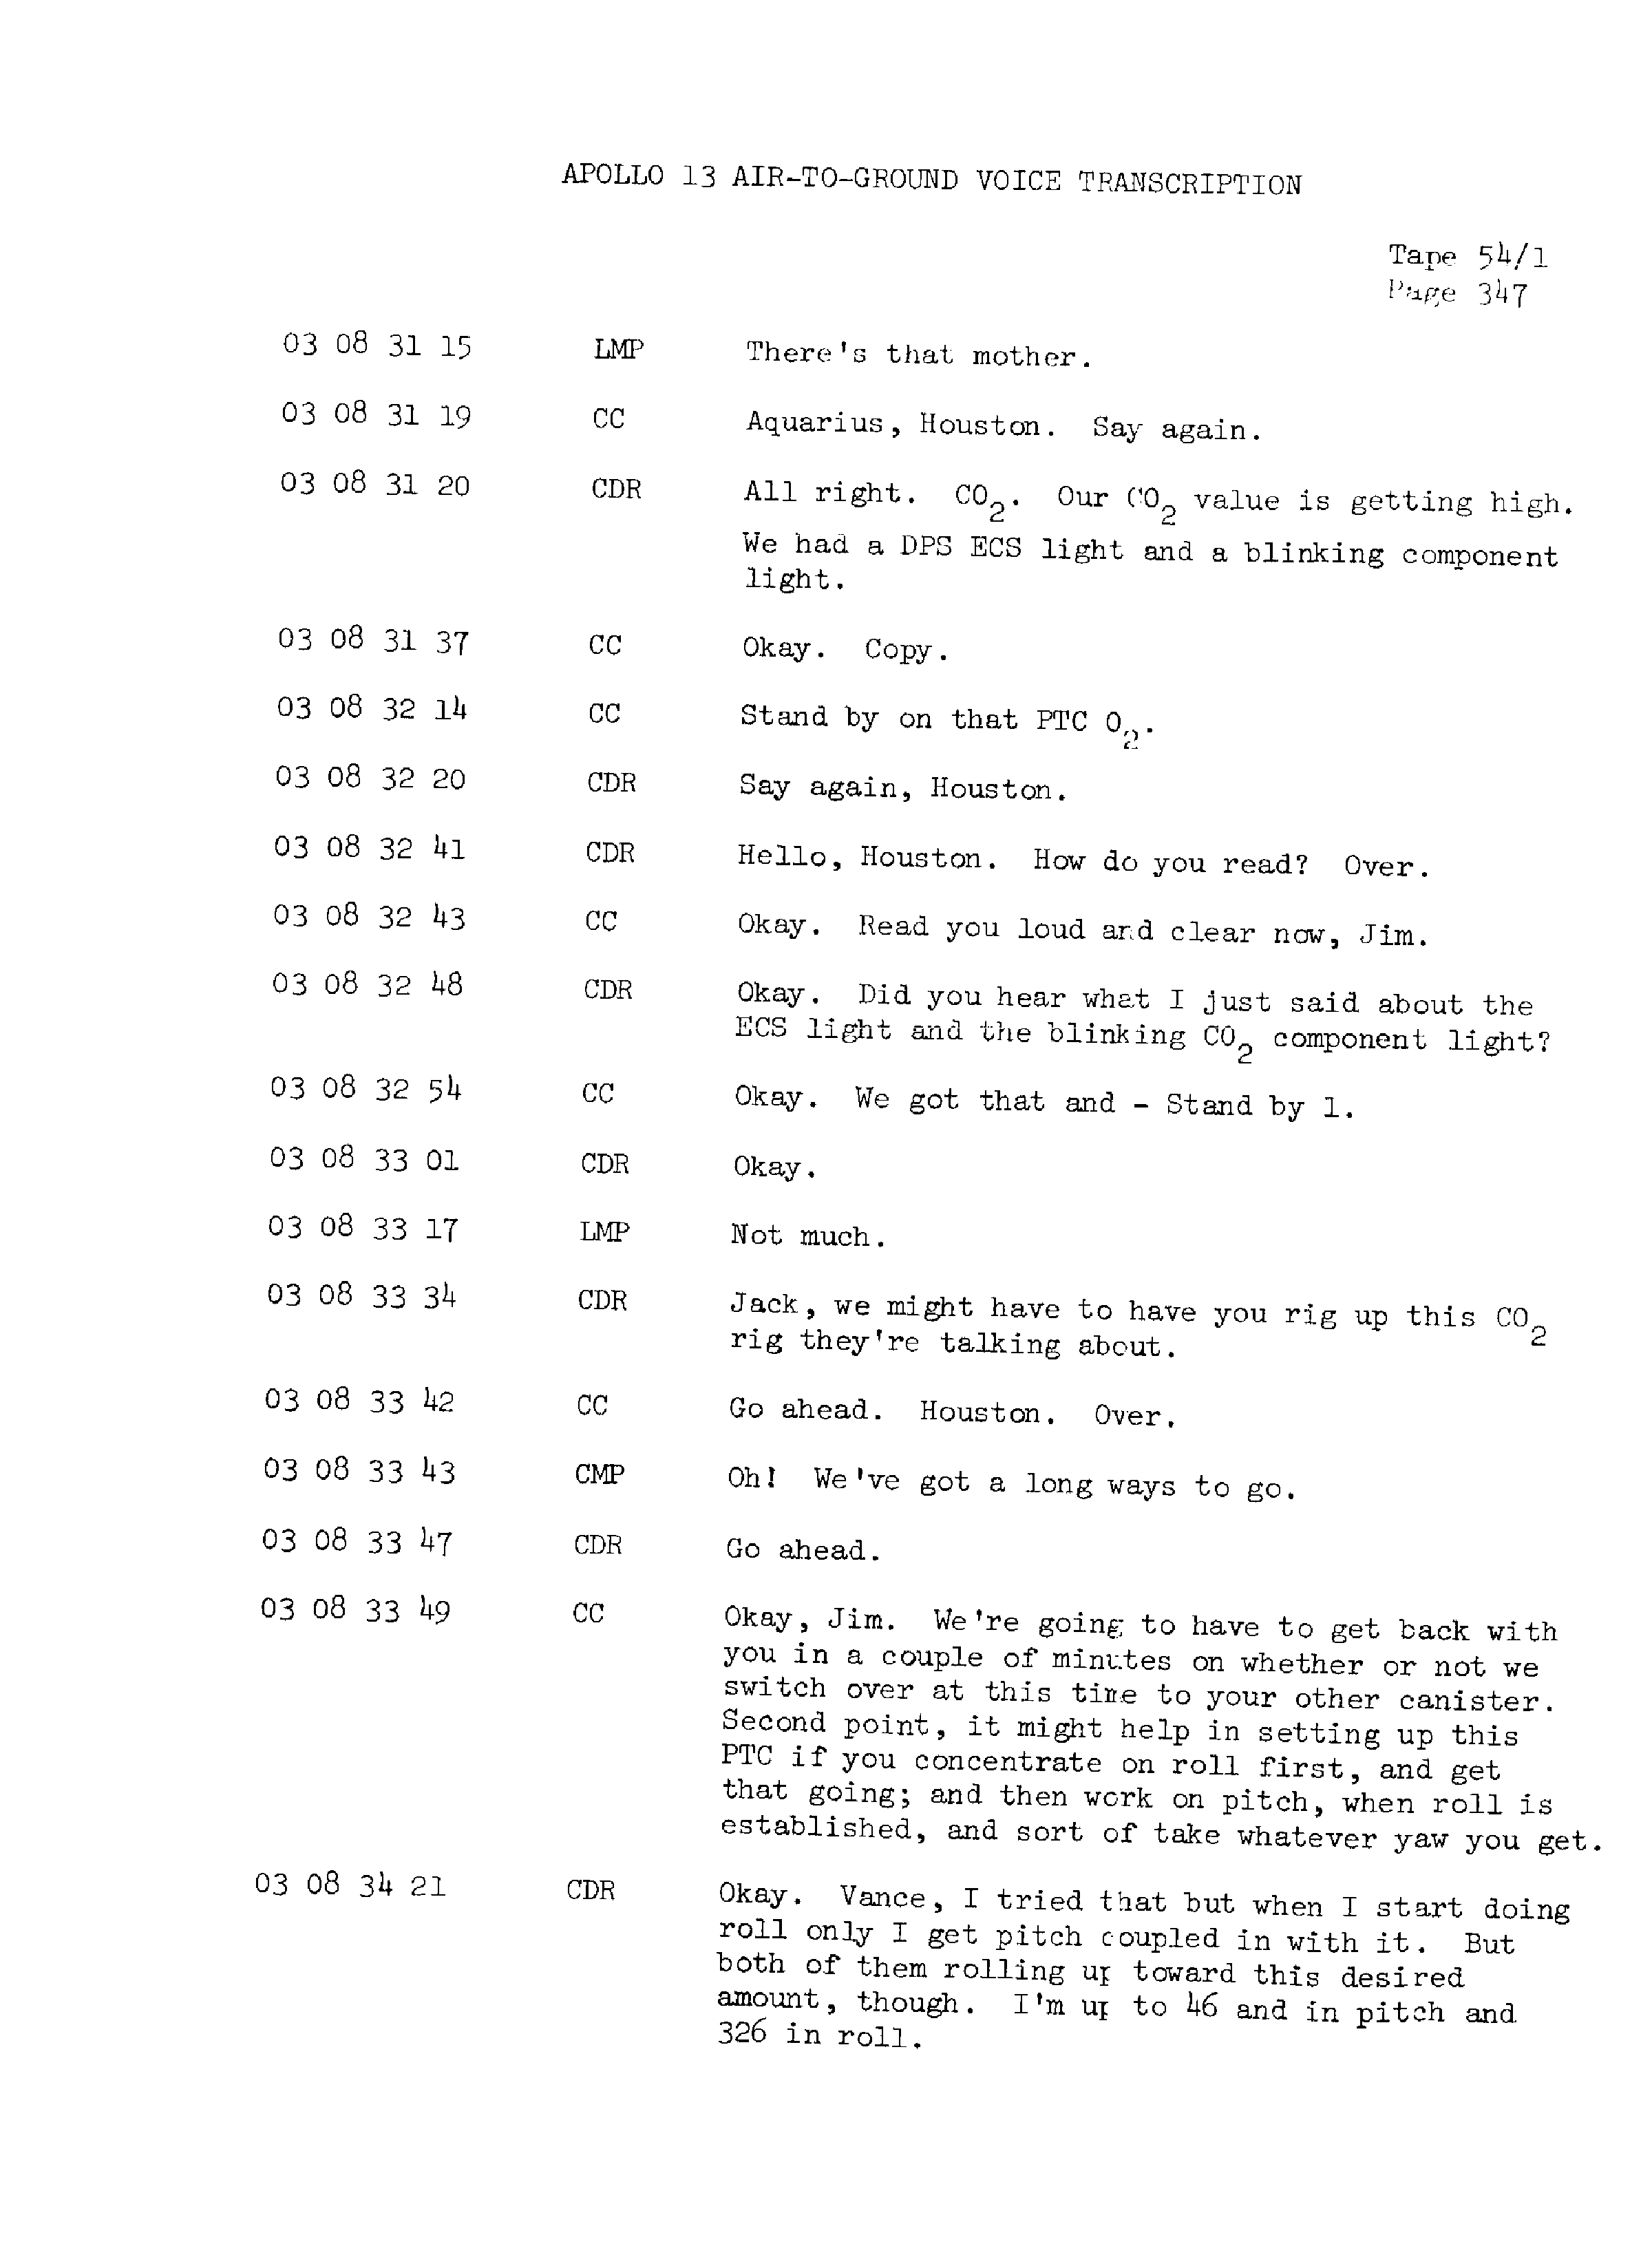 Page 354 of Apollo 13’s original transcript